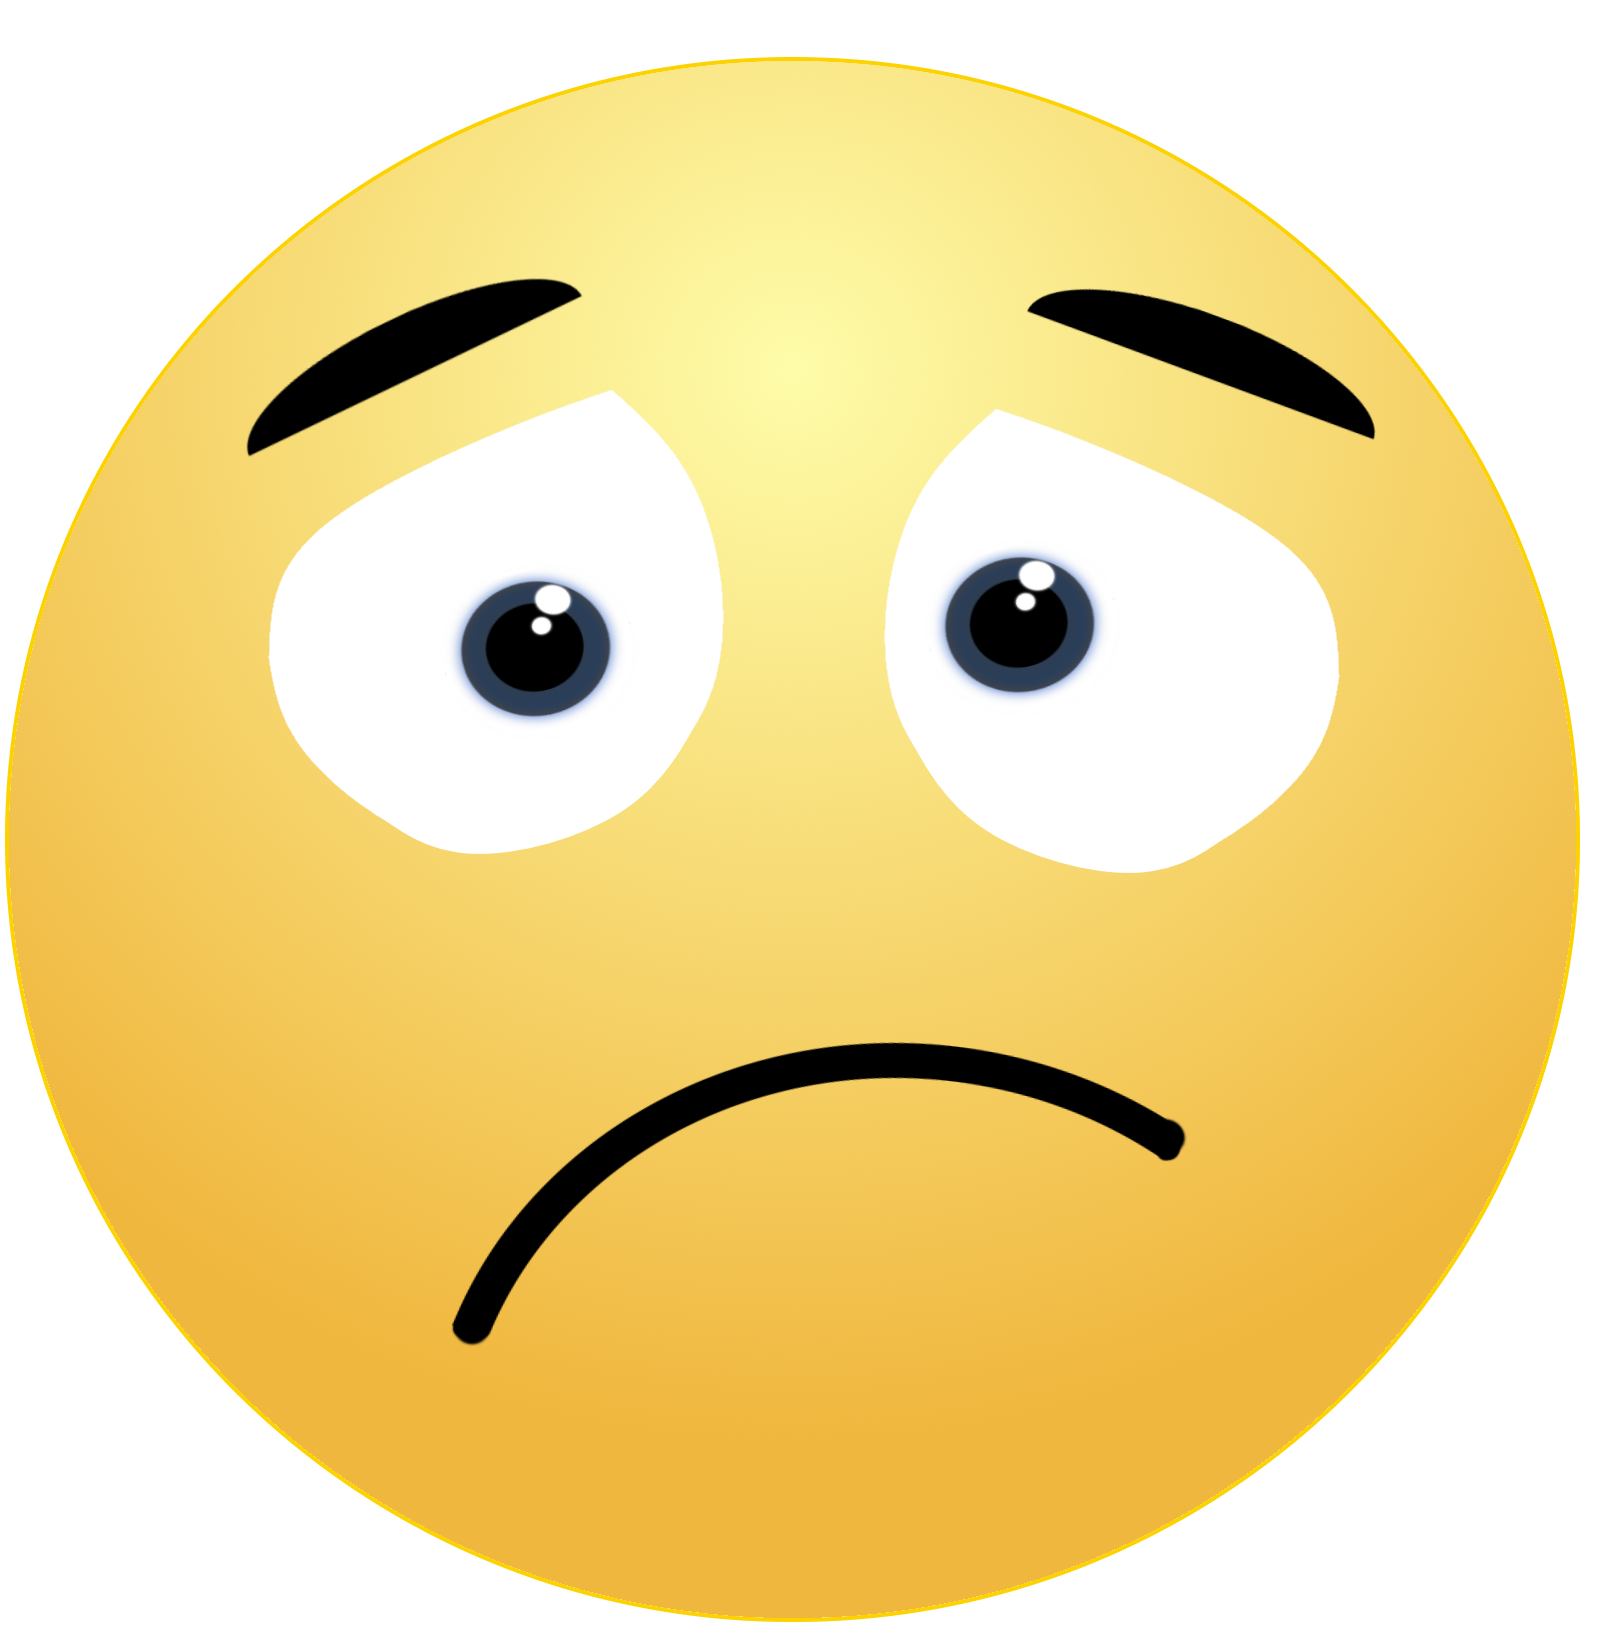 Bewildered Emoji Free Download Image PNG Image